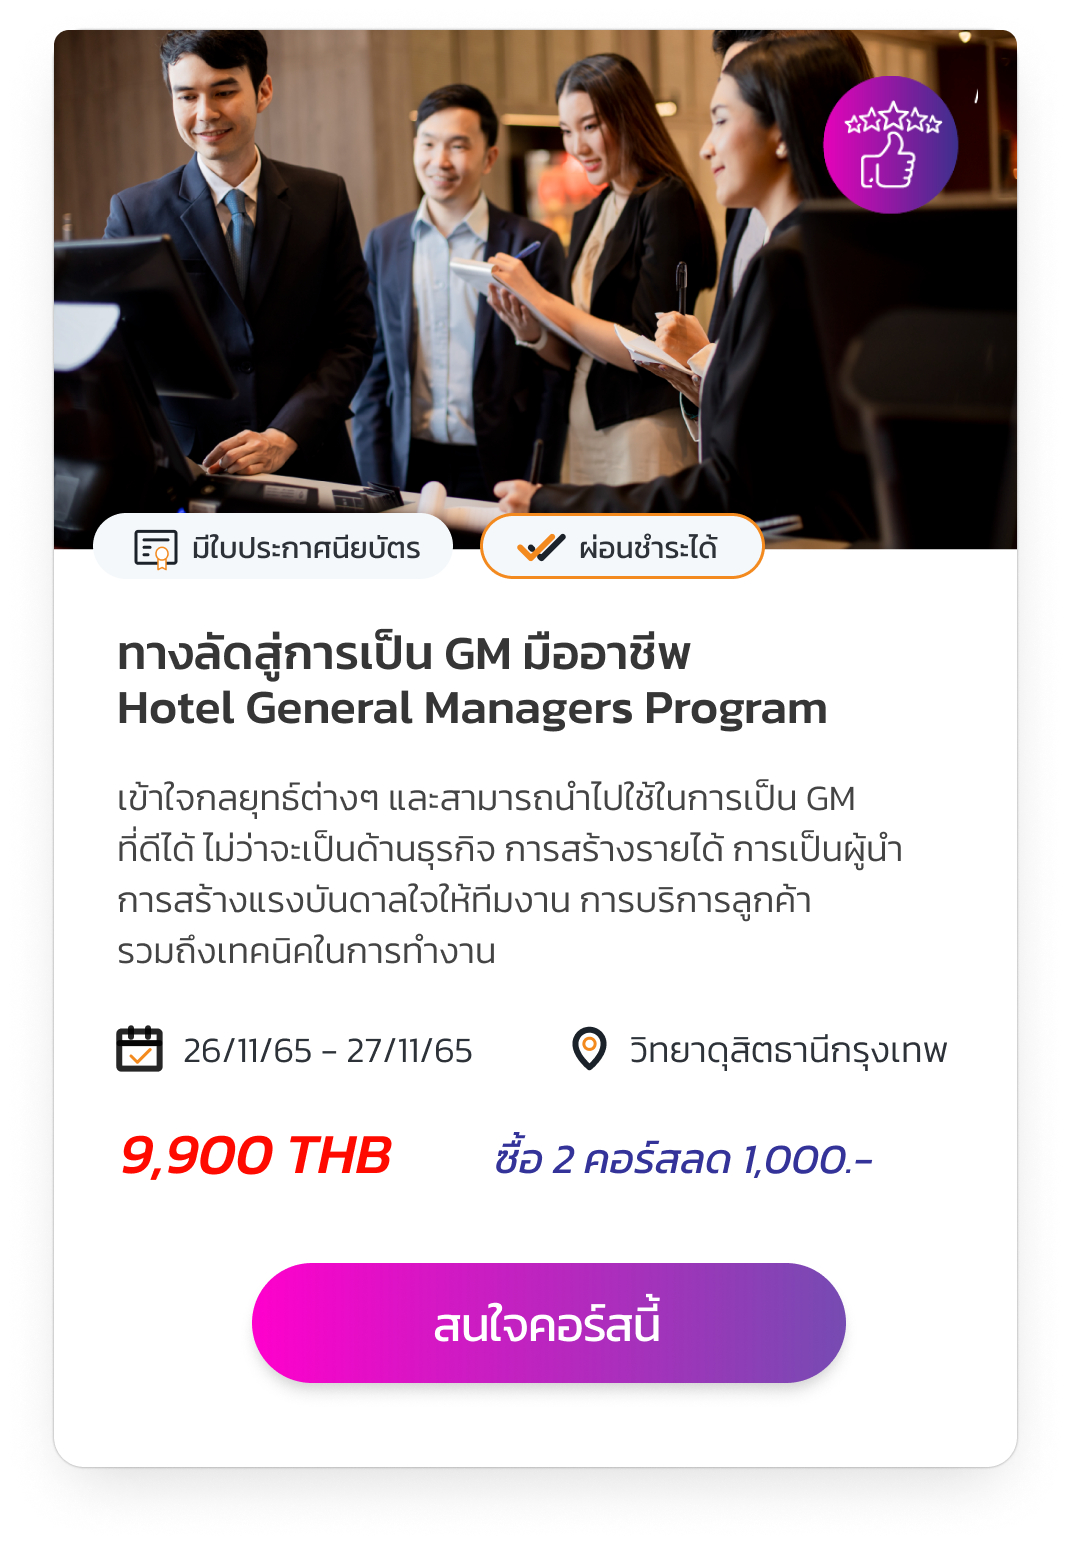 Hotel General Manager Program